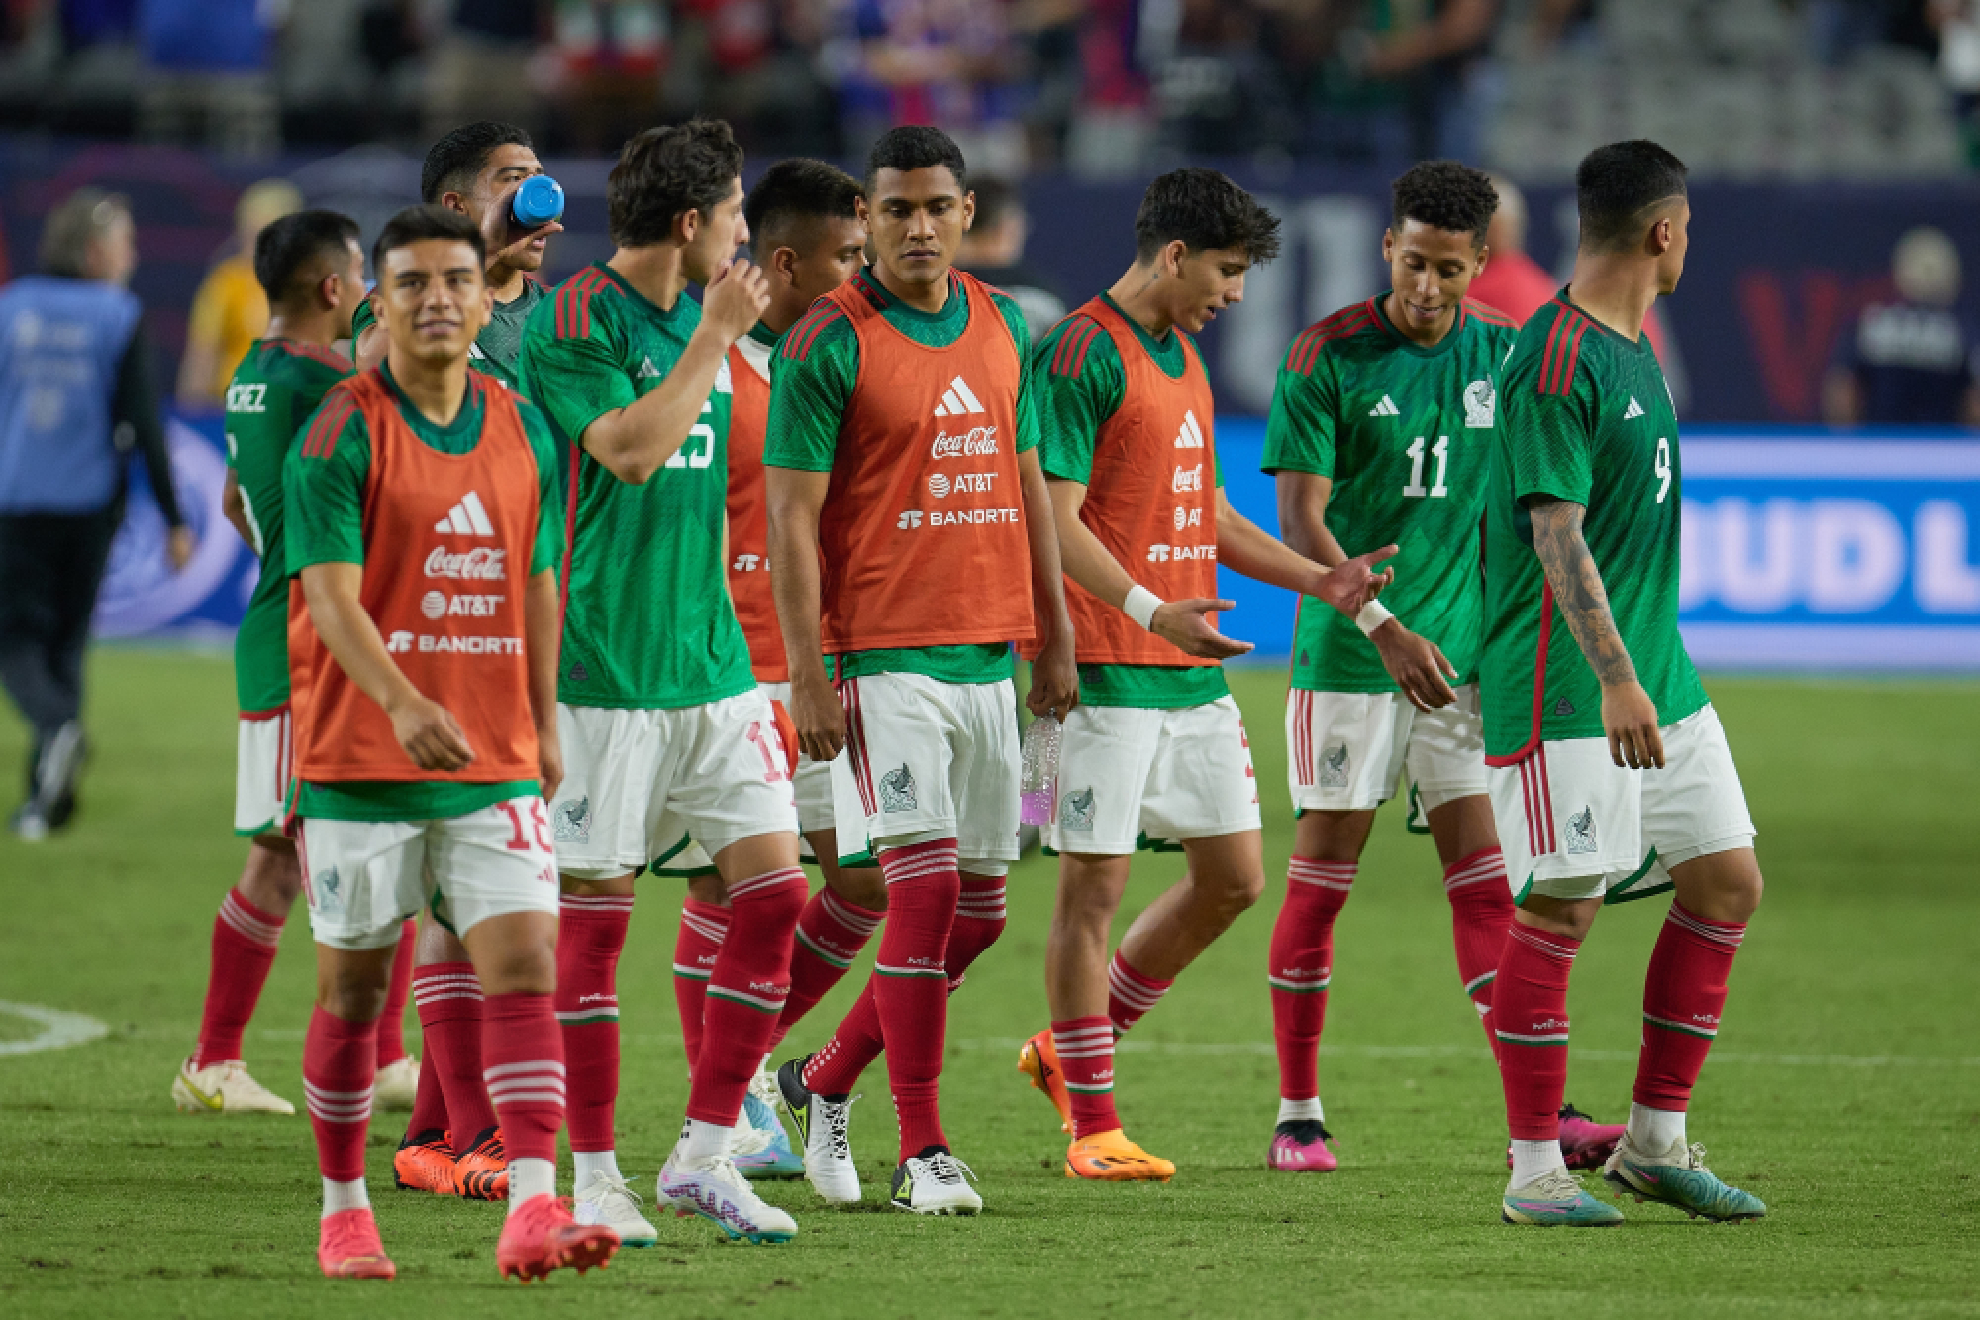 México en la Copa Oro: los fracasos de la Selección Mexicana con diferentes DTs